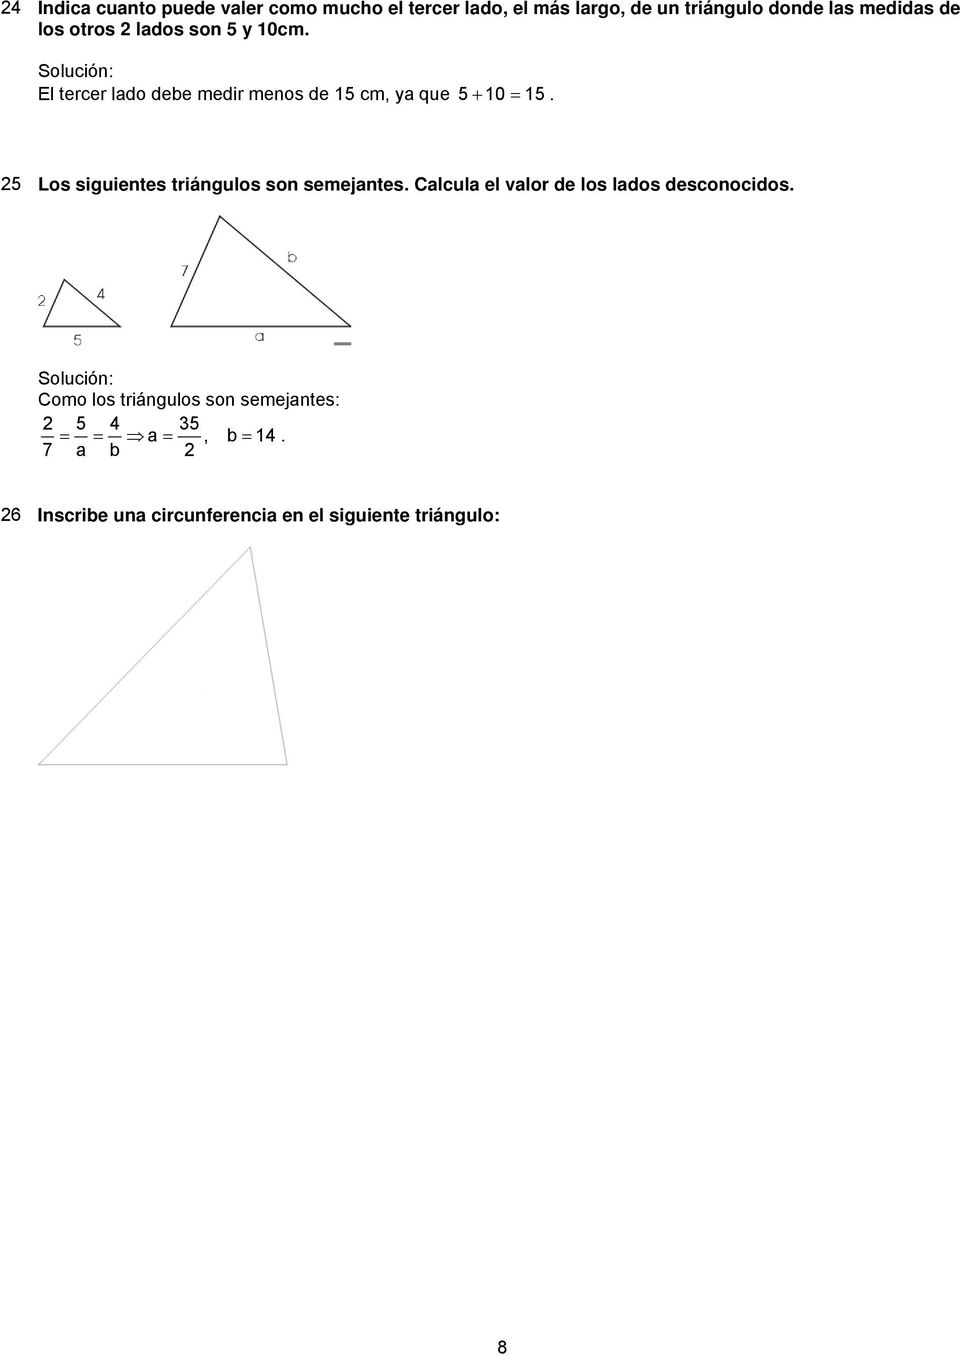 5 Los siguientes triángulos son semejantes. Calcula el valor de los lados desconocidos.